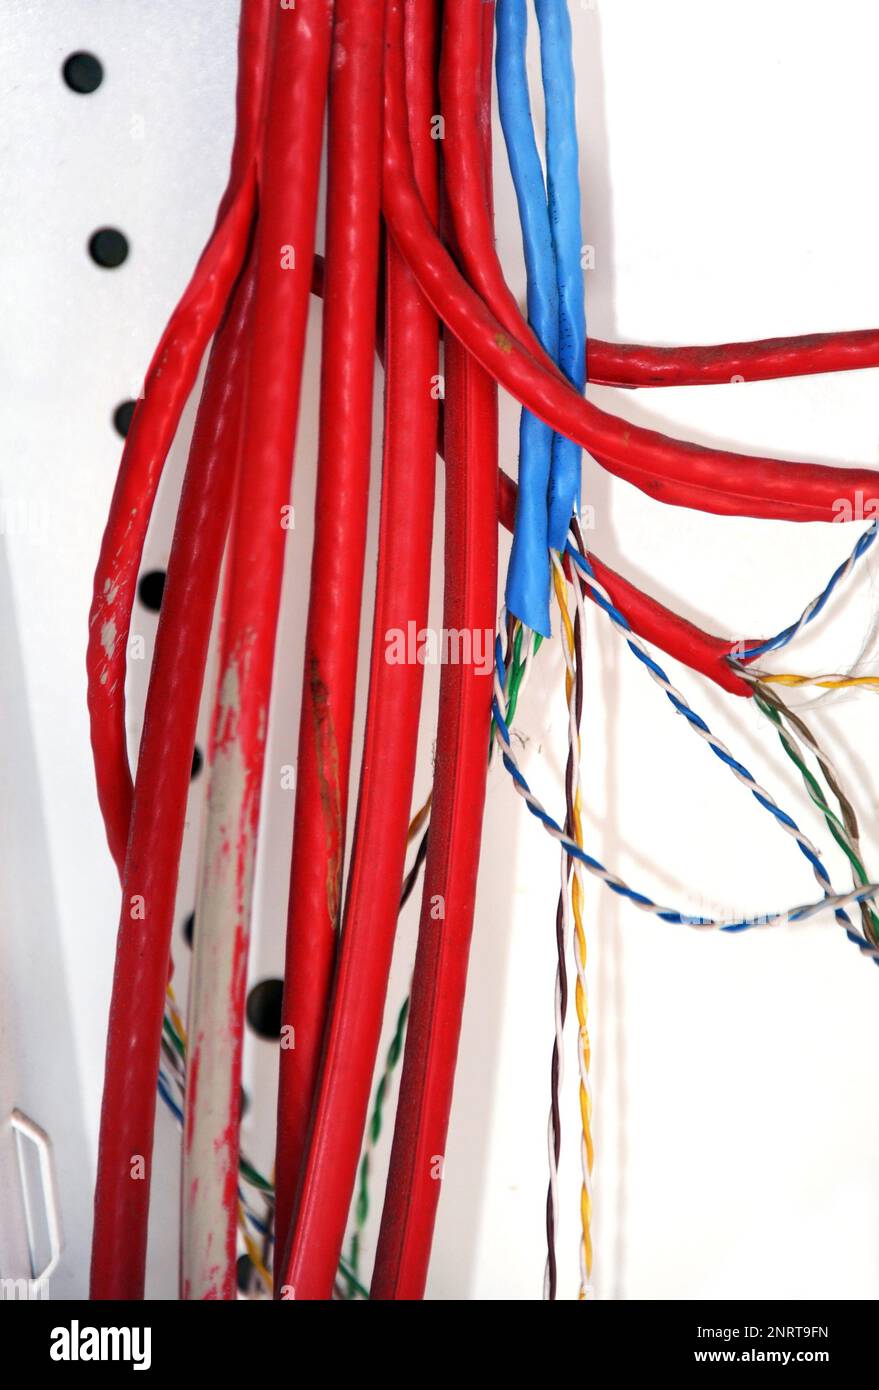 Red wires immagini e fotografie stock ad alta risoluzione - Alamy